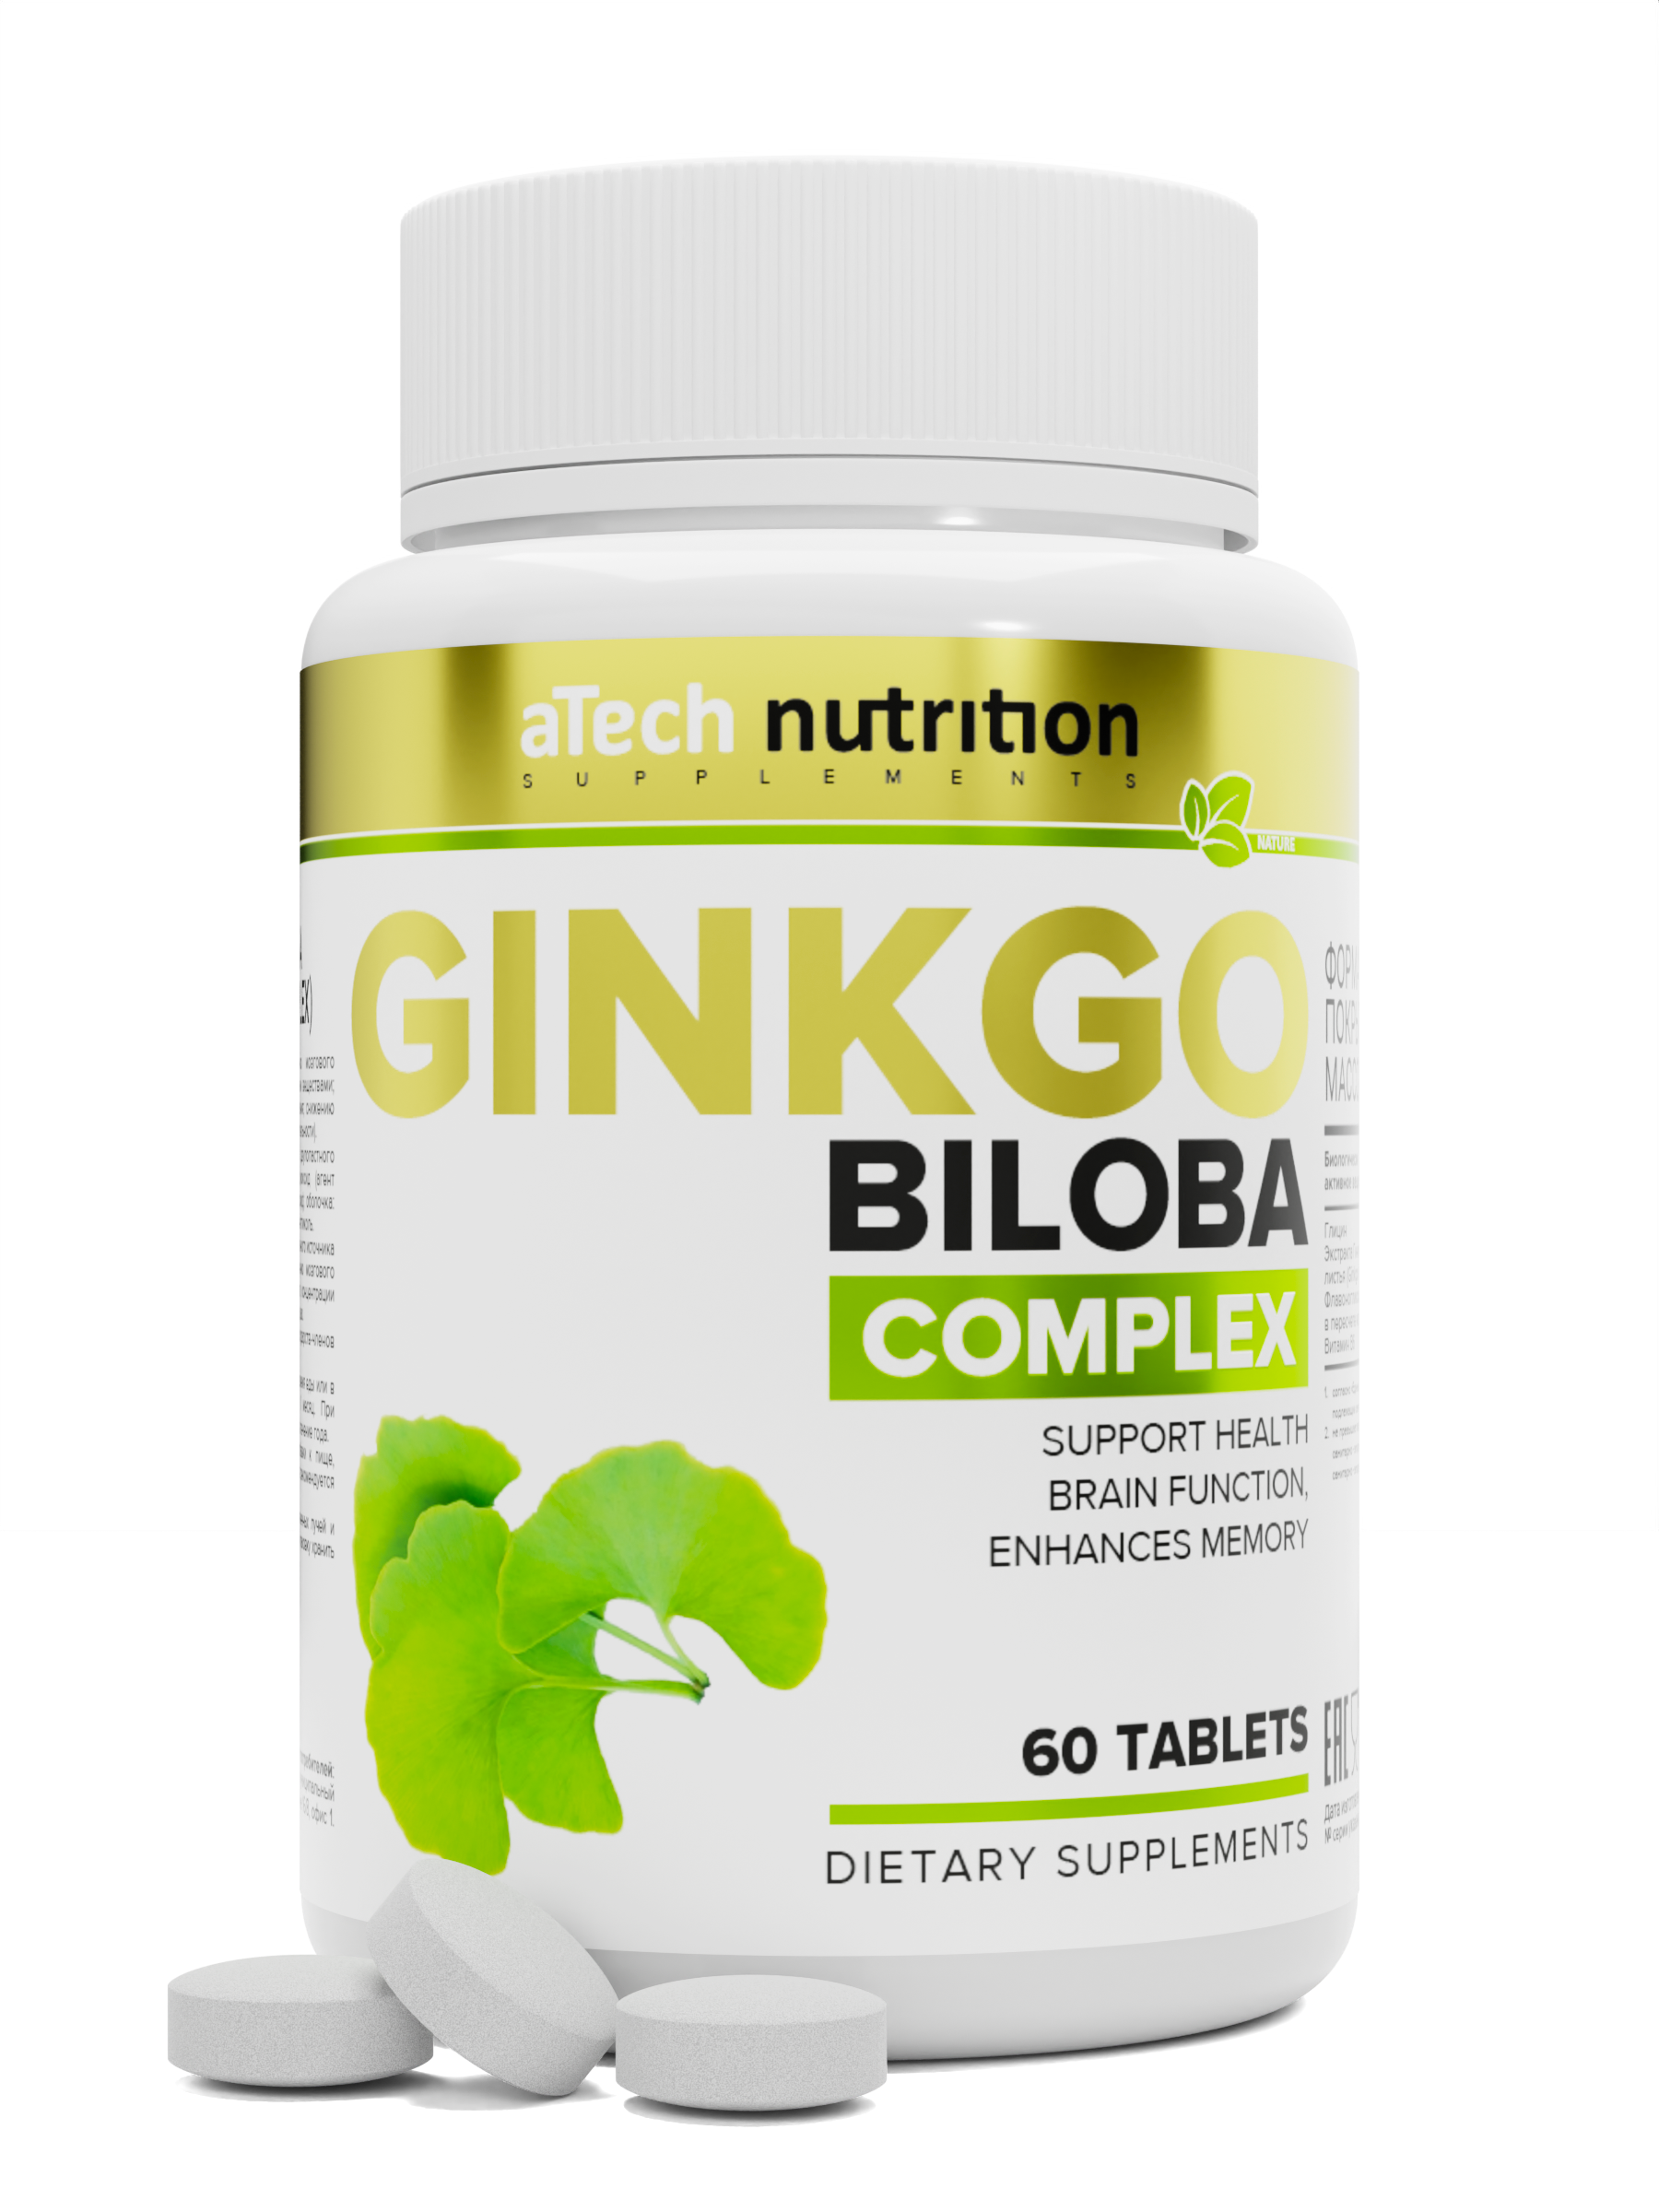 Экстракт Гинкго билоба +Глицин+В6, Экстракт Гинкго билоба aTech nutrition + Глицин + В6, 60 таблеток  - купить